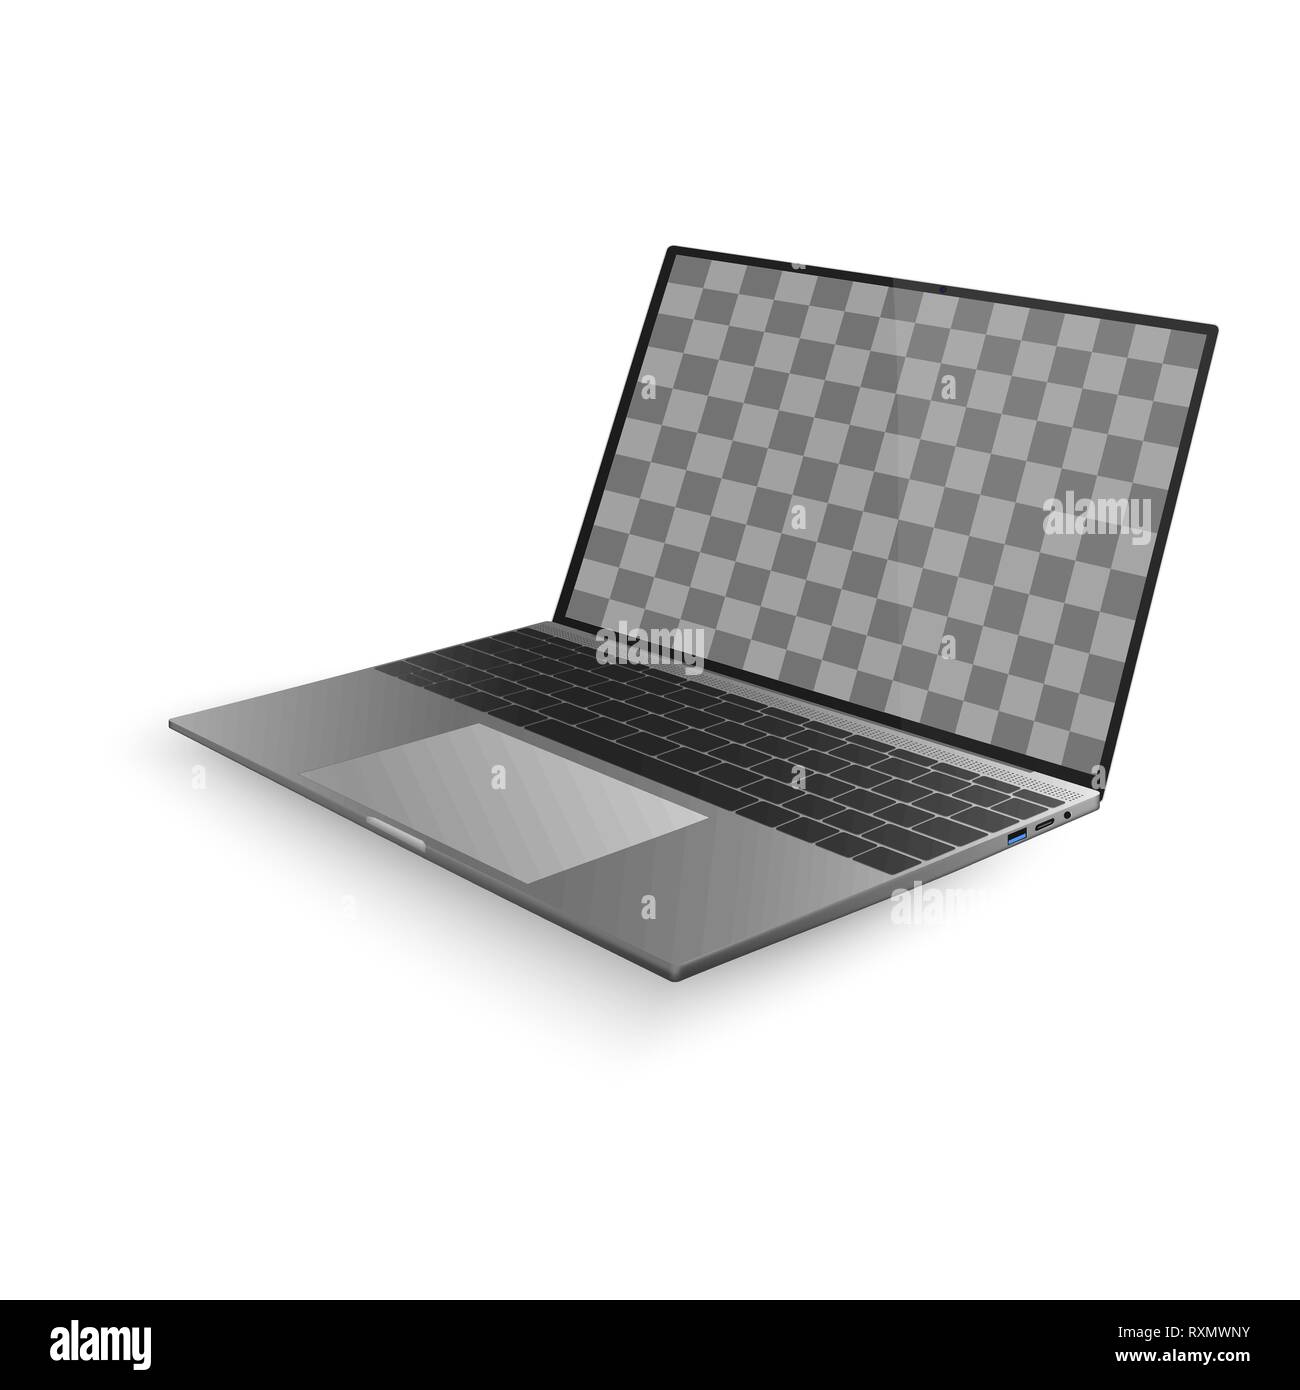 Laptop mit Schatten auf weißem Hintergrund. Laptop Design mit schwarzen und grauen Tastatur. Vector Illustration Stock Vektor